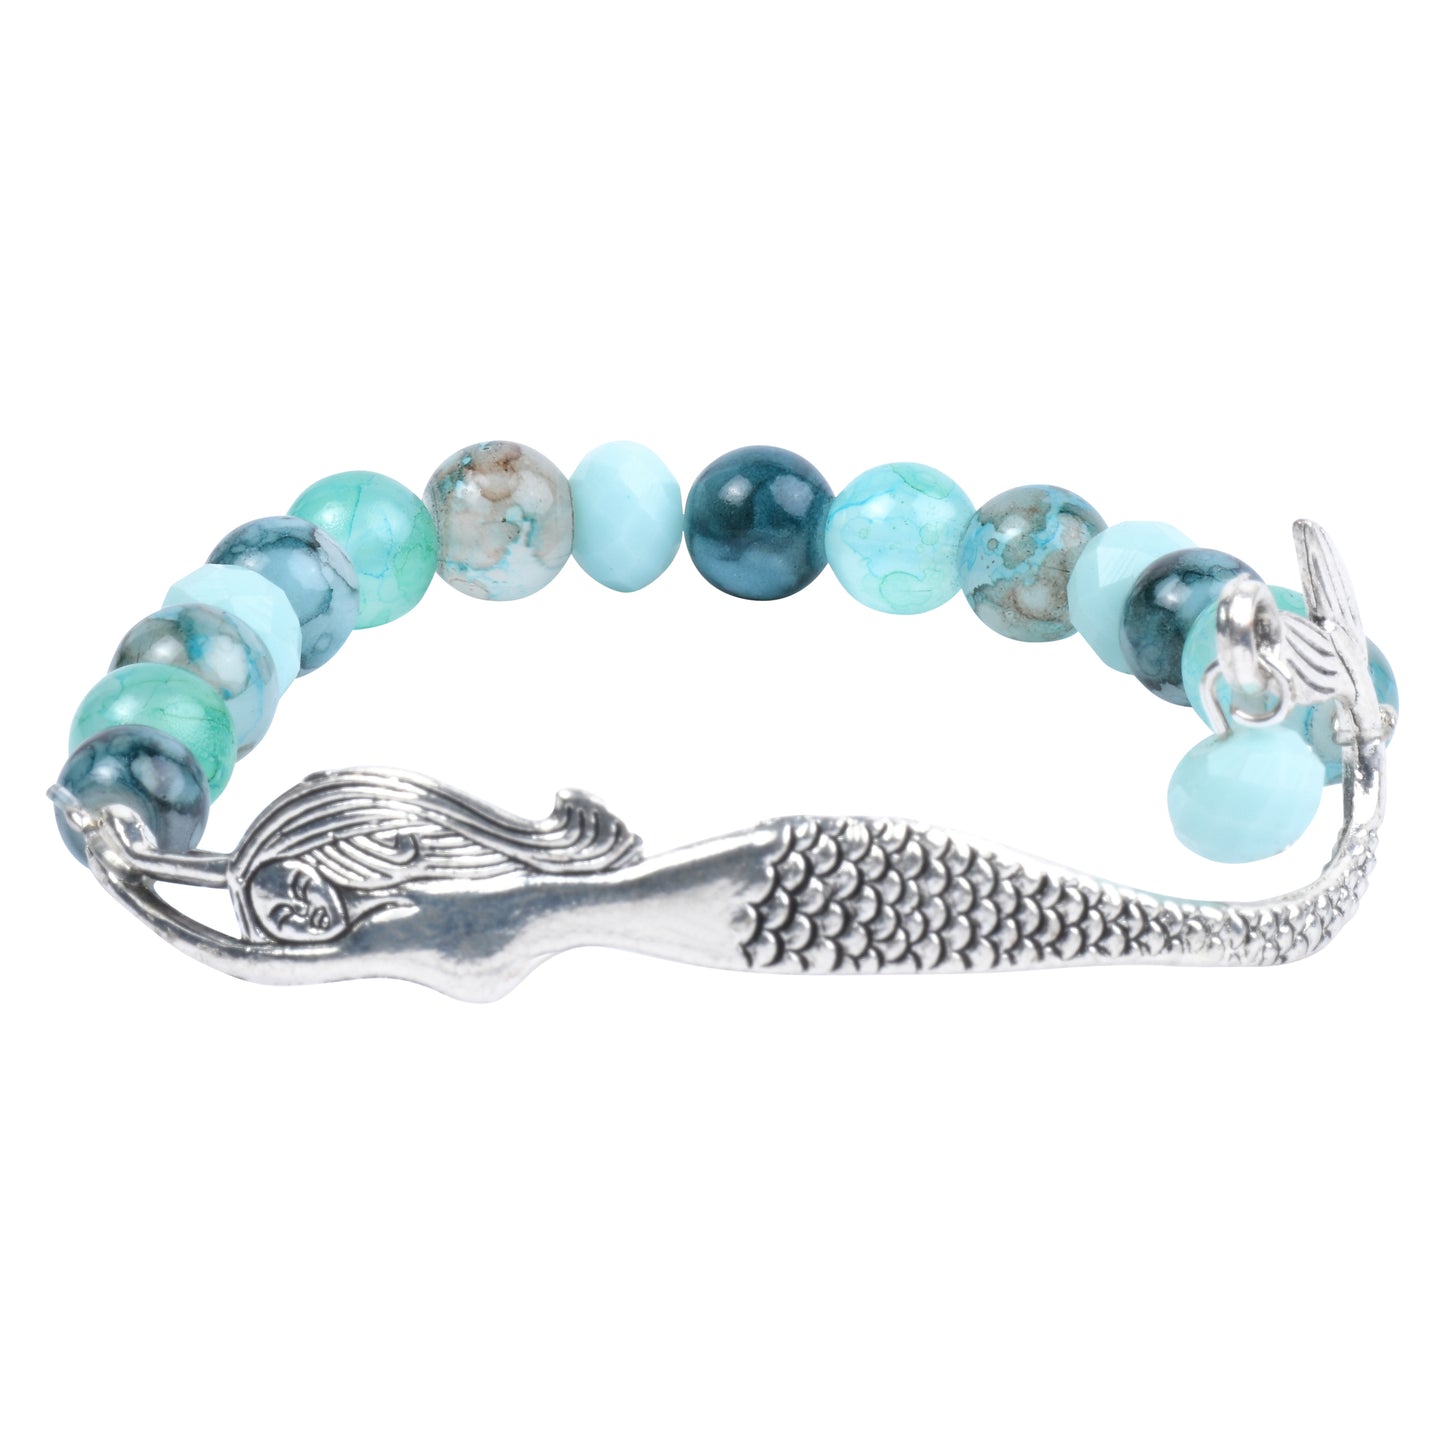 Mermaid Found Treasure Bracelets